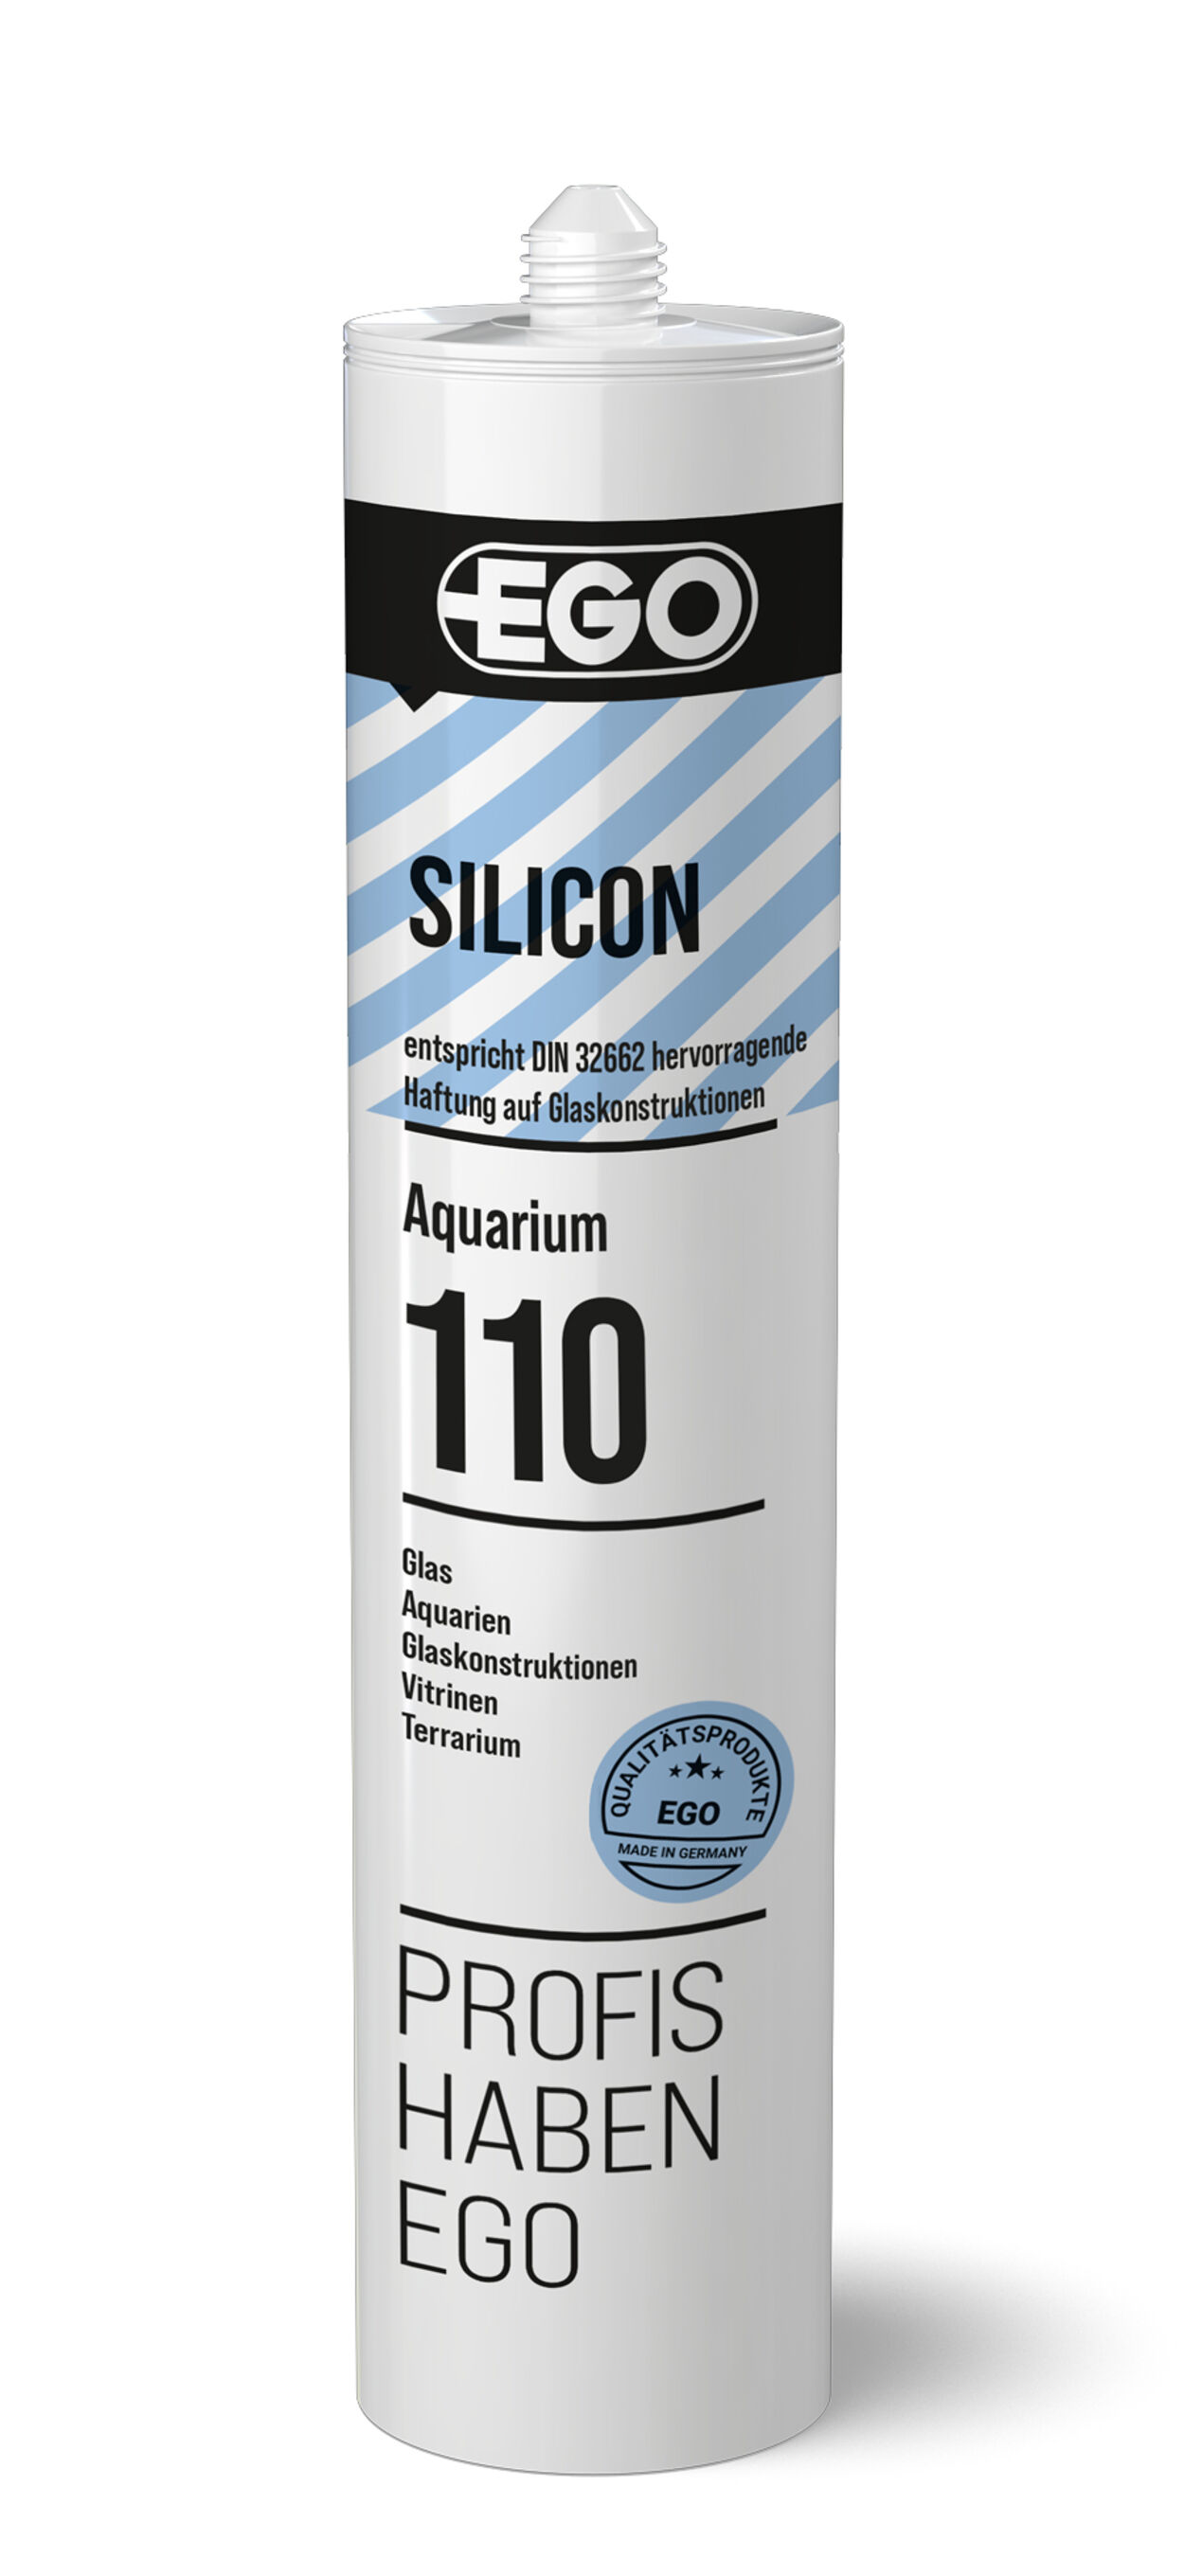 Silicone sealant for aquarium sealing